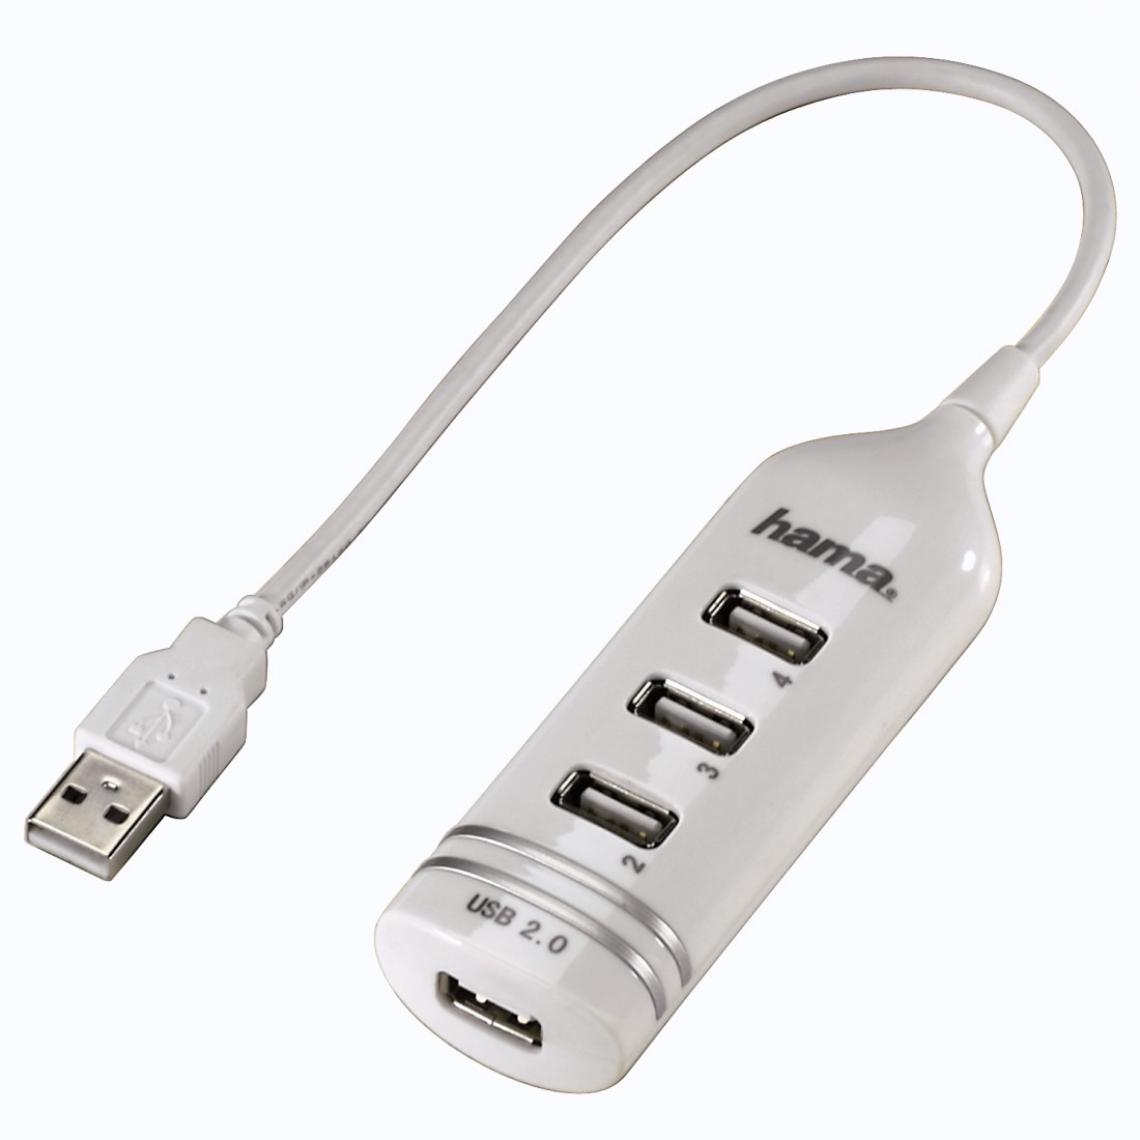 Hama - Hub USB 2.0, 4 ports, alimenté par bus, Blanc - Hub